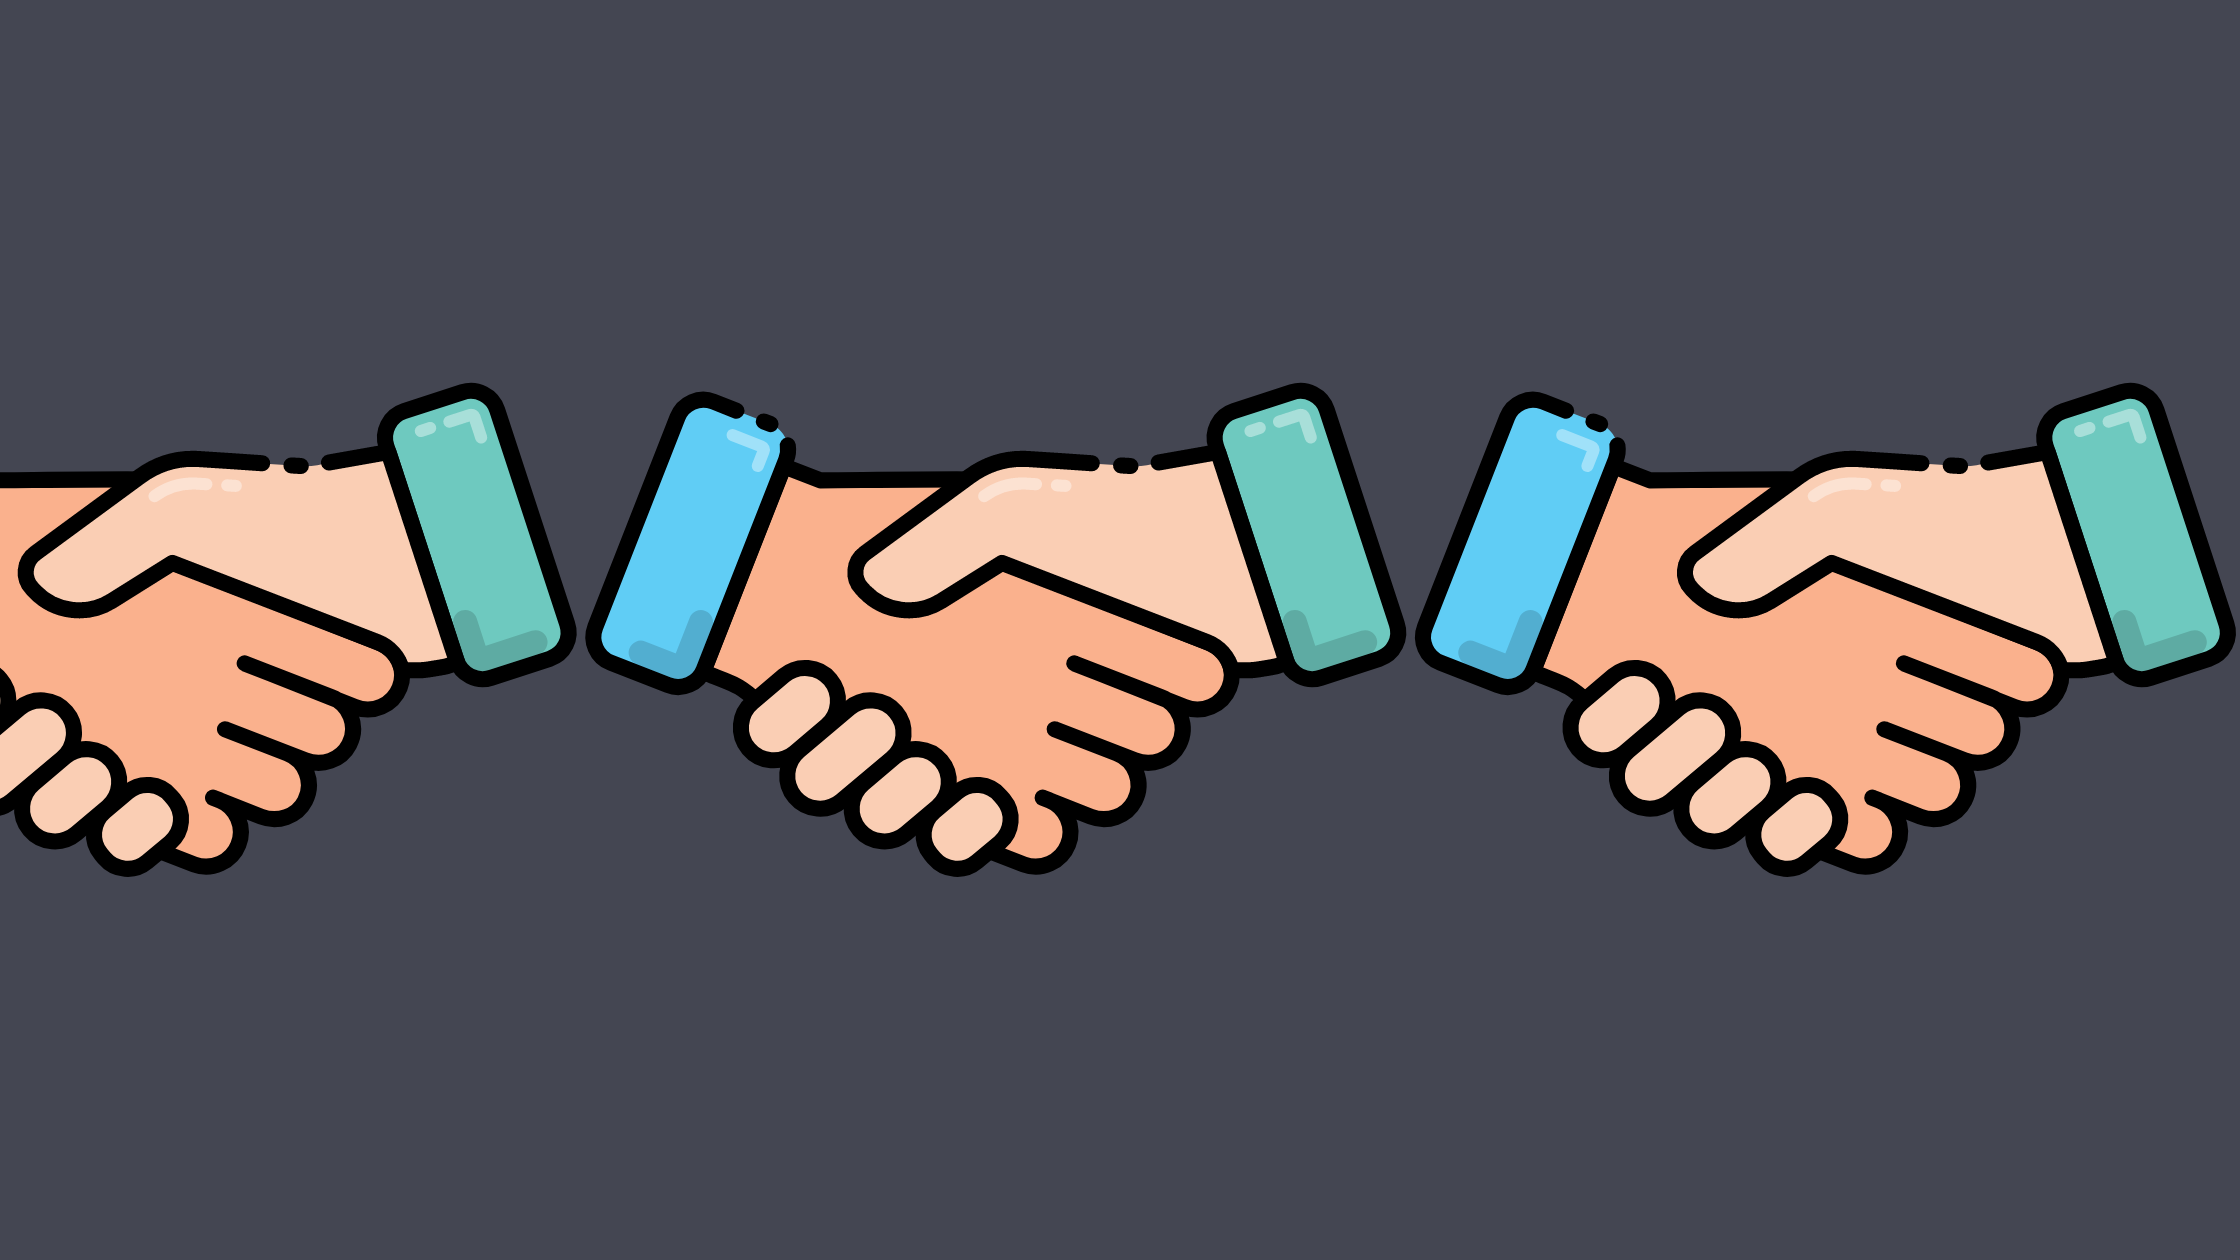 Handshake emojis